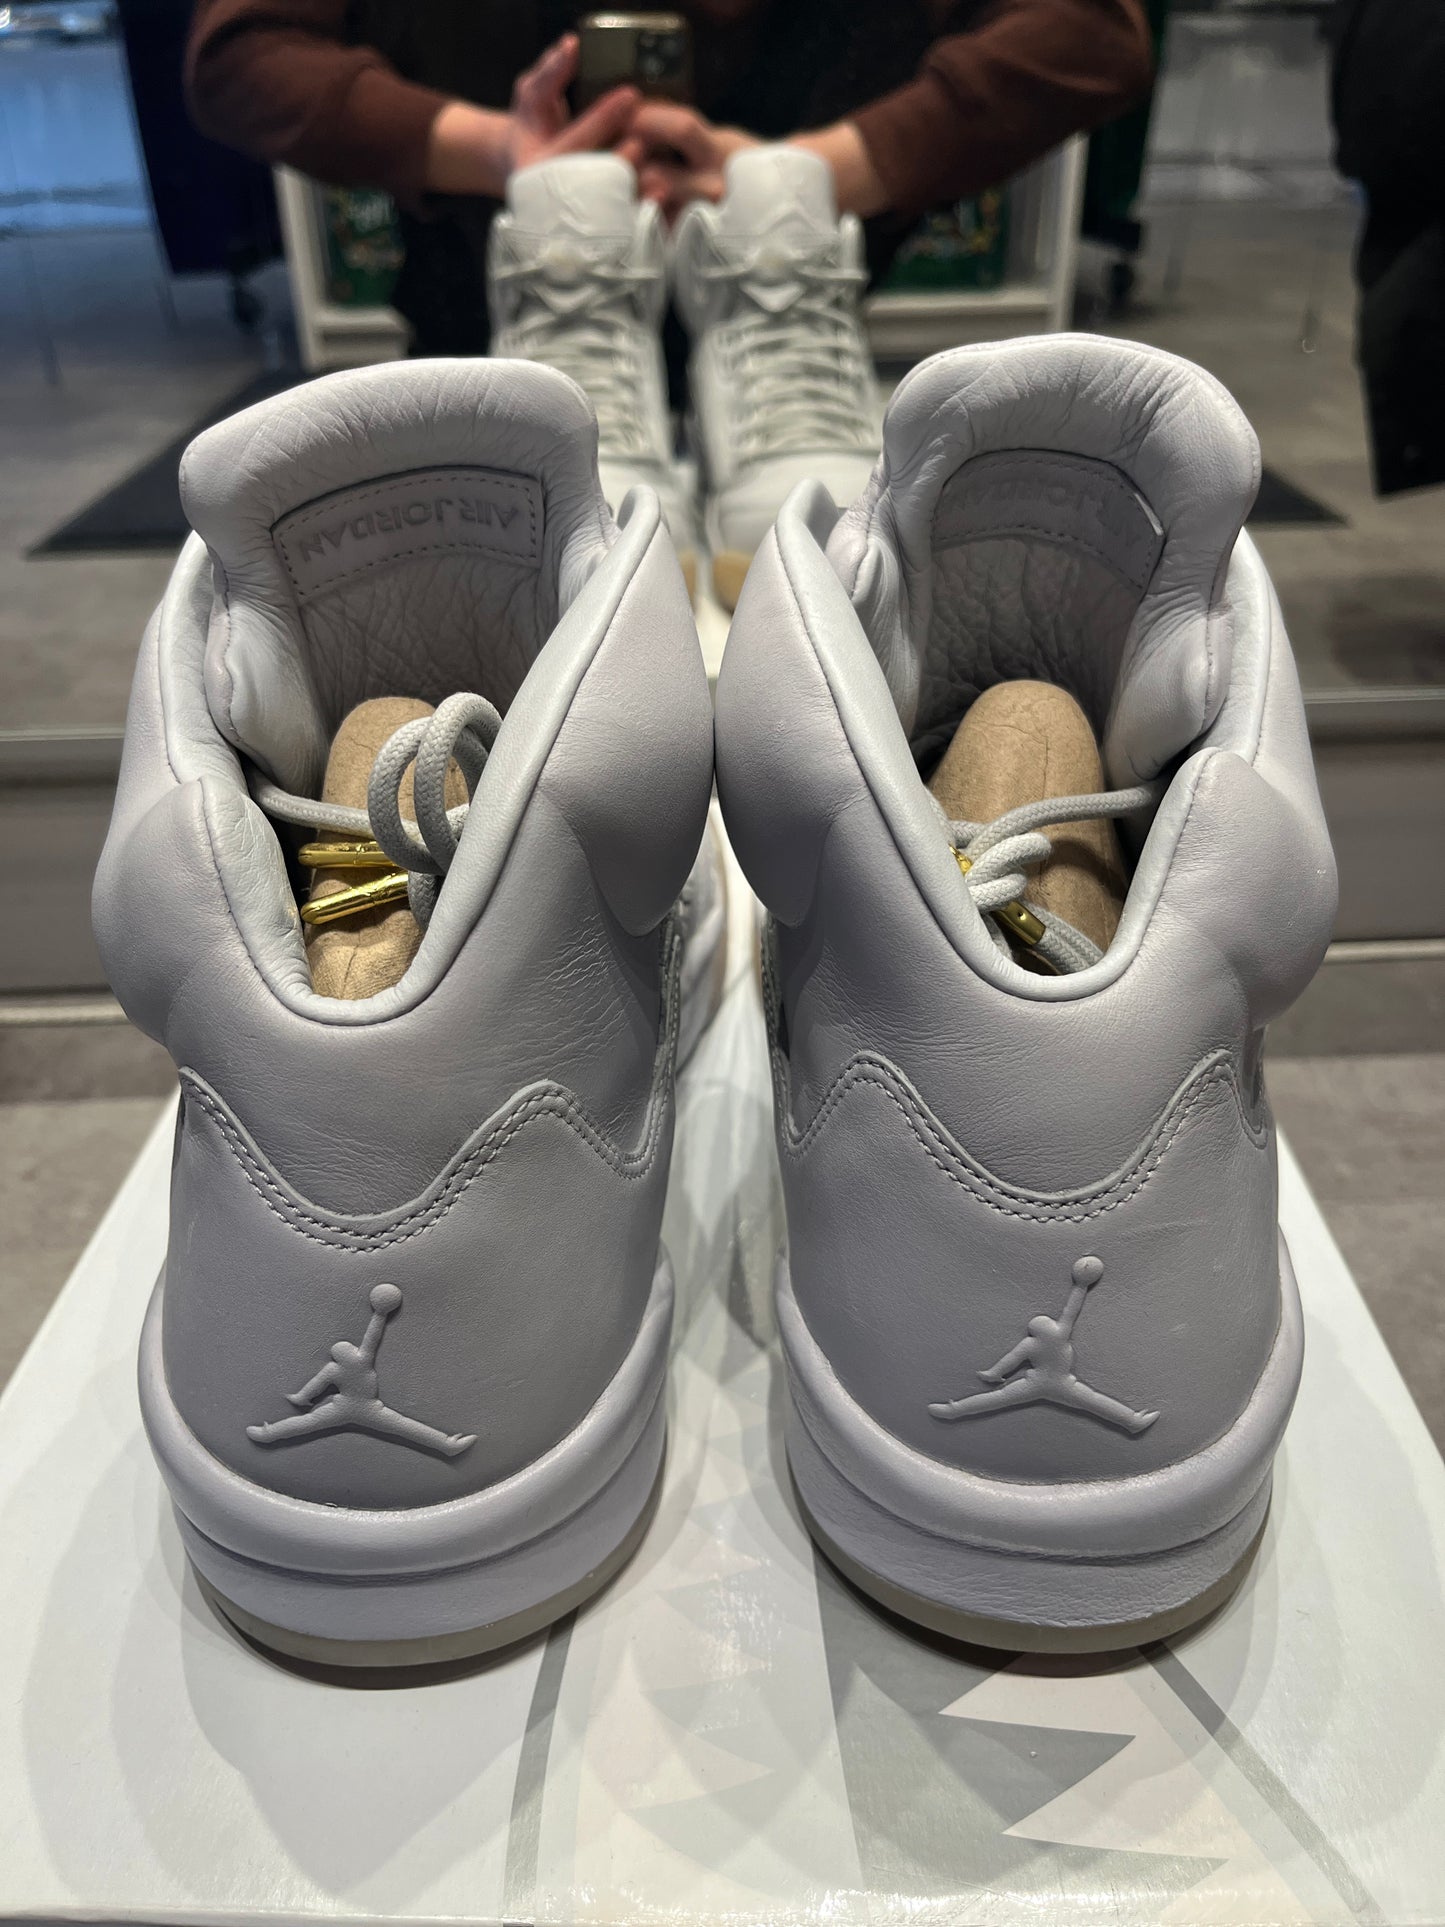 Jordan 5 Retro Premium Pure Platinum (Preowned Size 13)